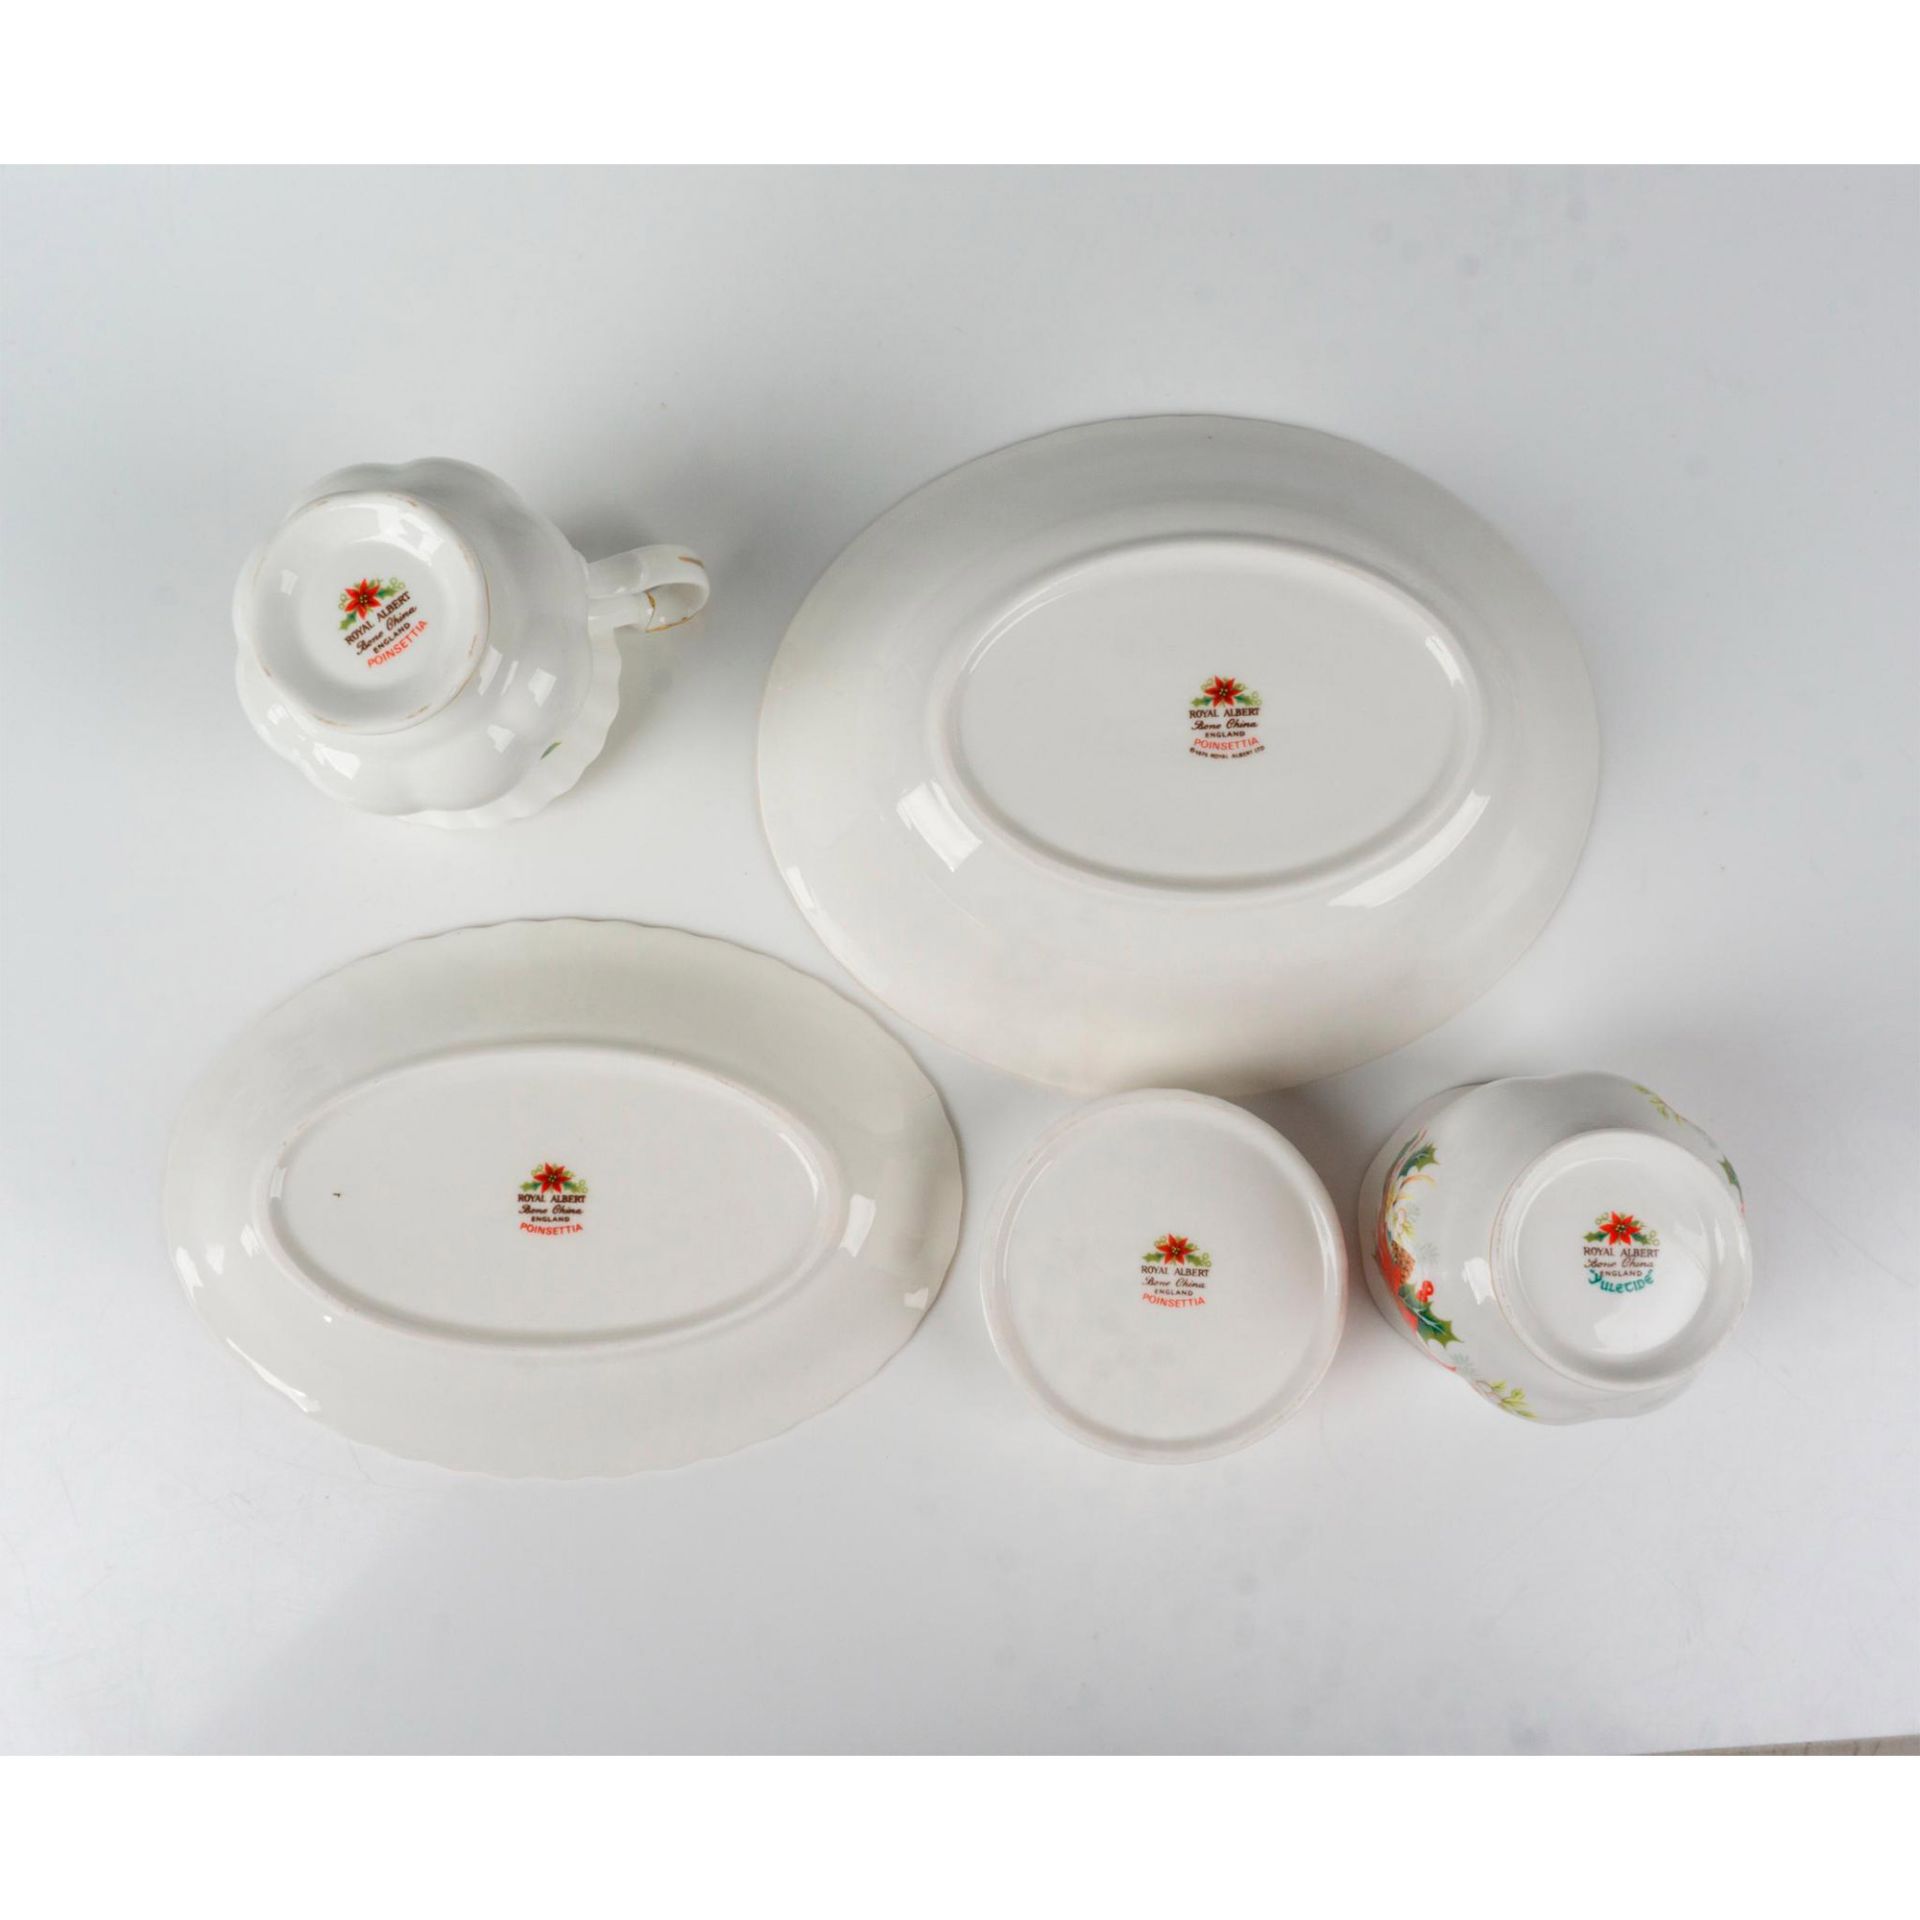 22pc Royal Albert Bone China Tableware, Poinsettia - Image 5 of 5